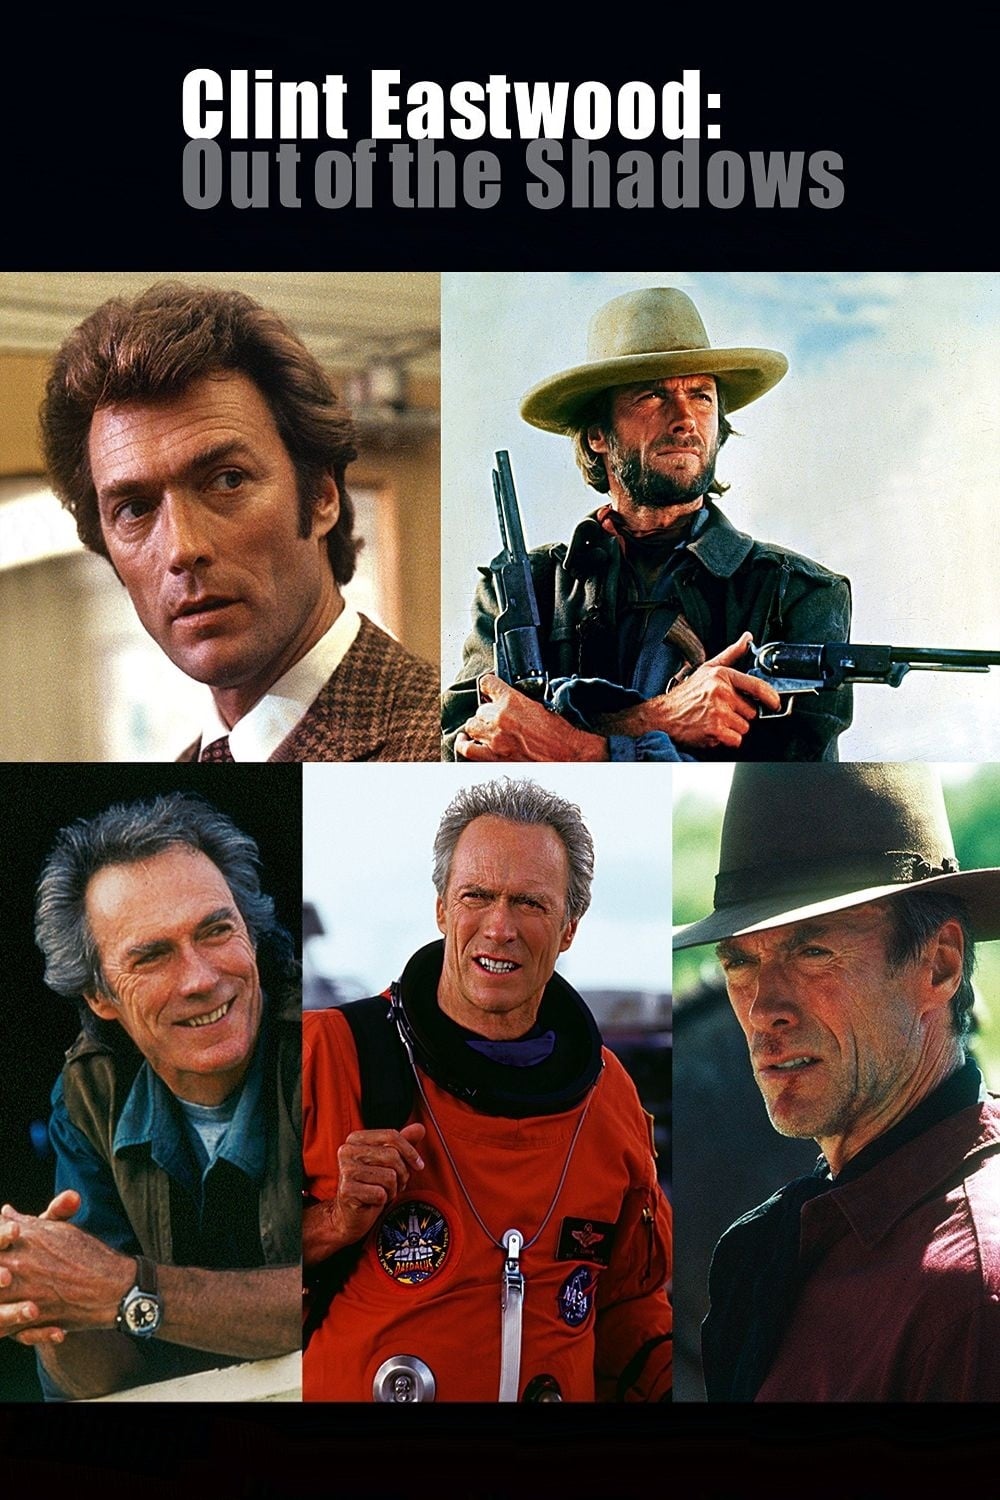 Clint Eastwood : hors de l'ombre